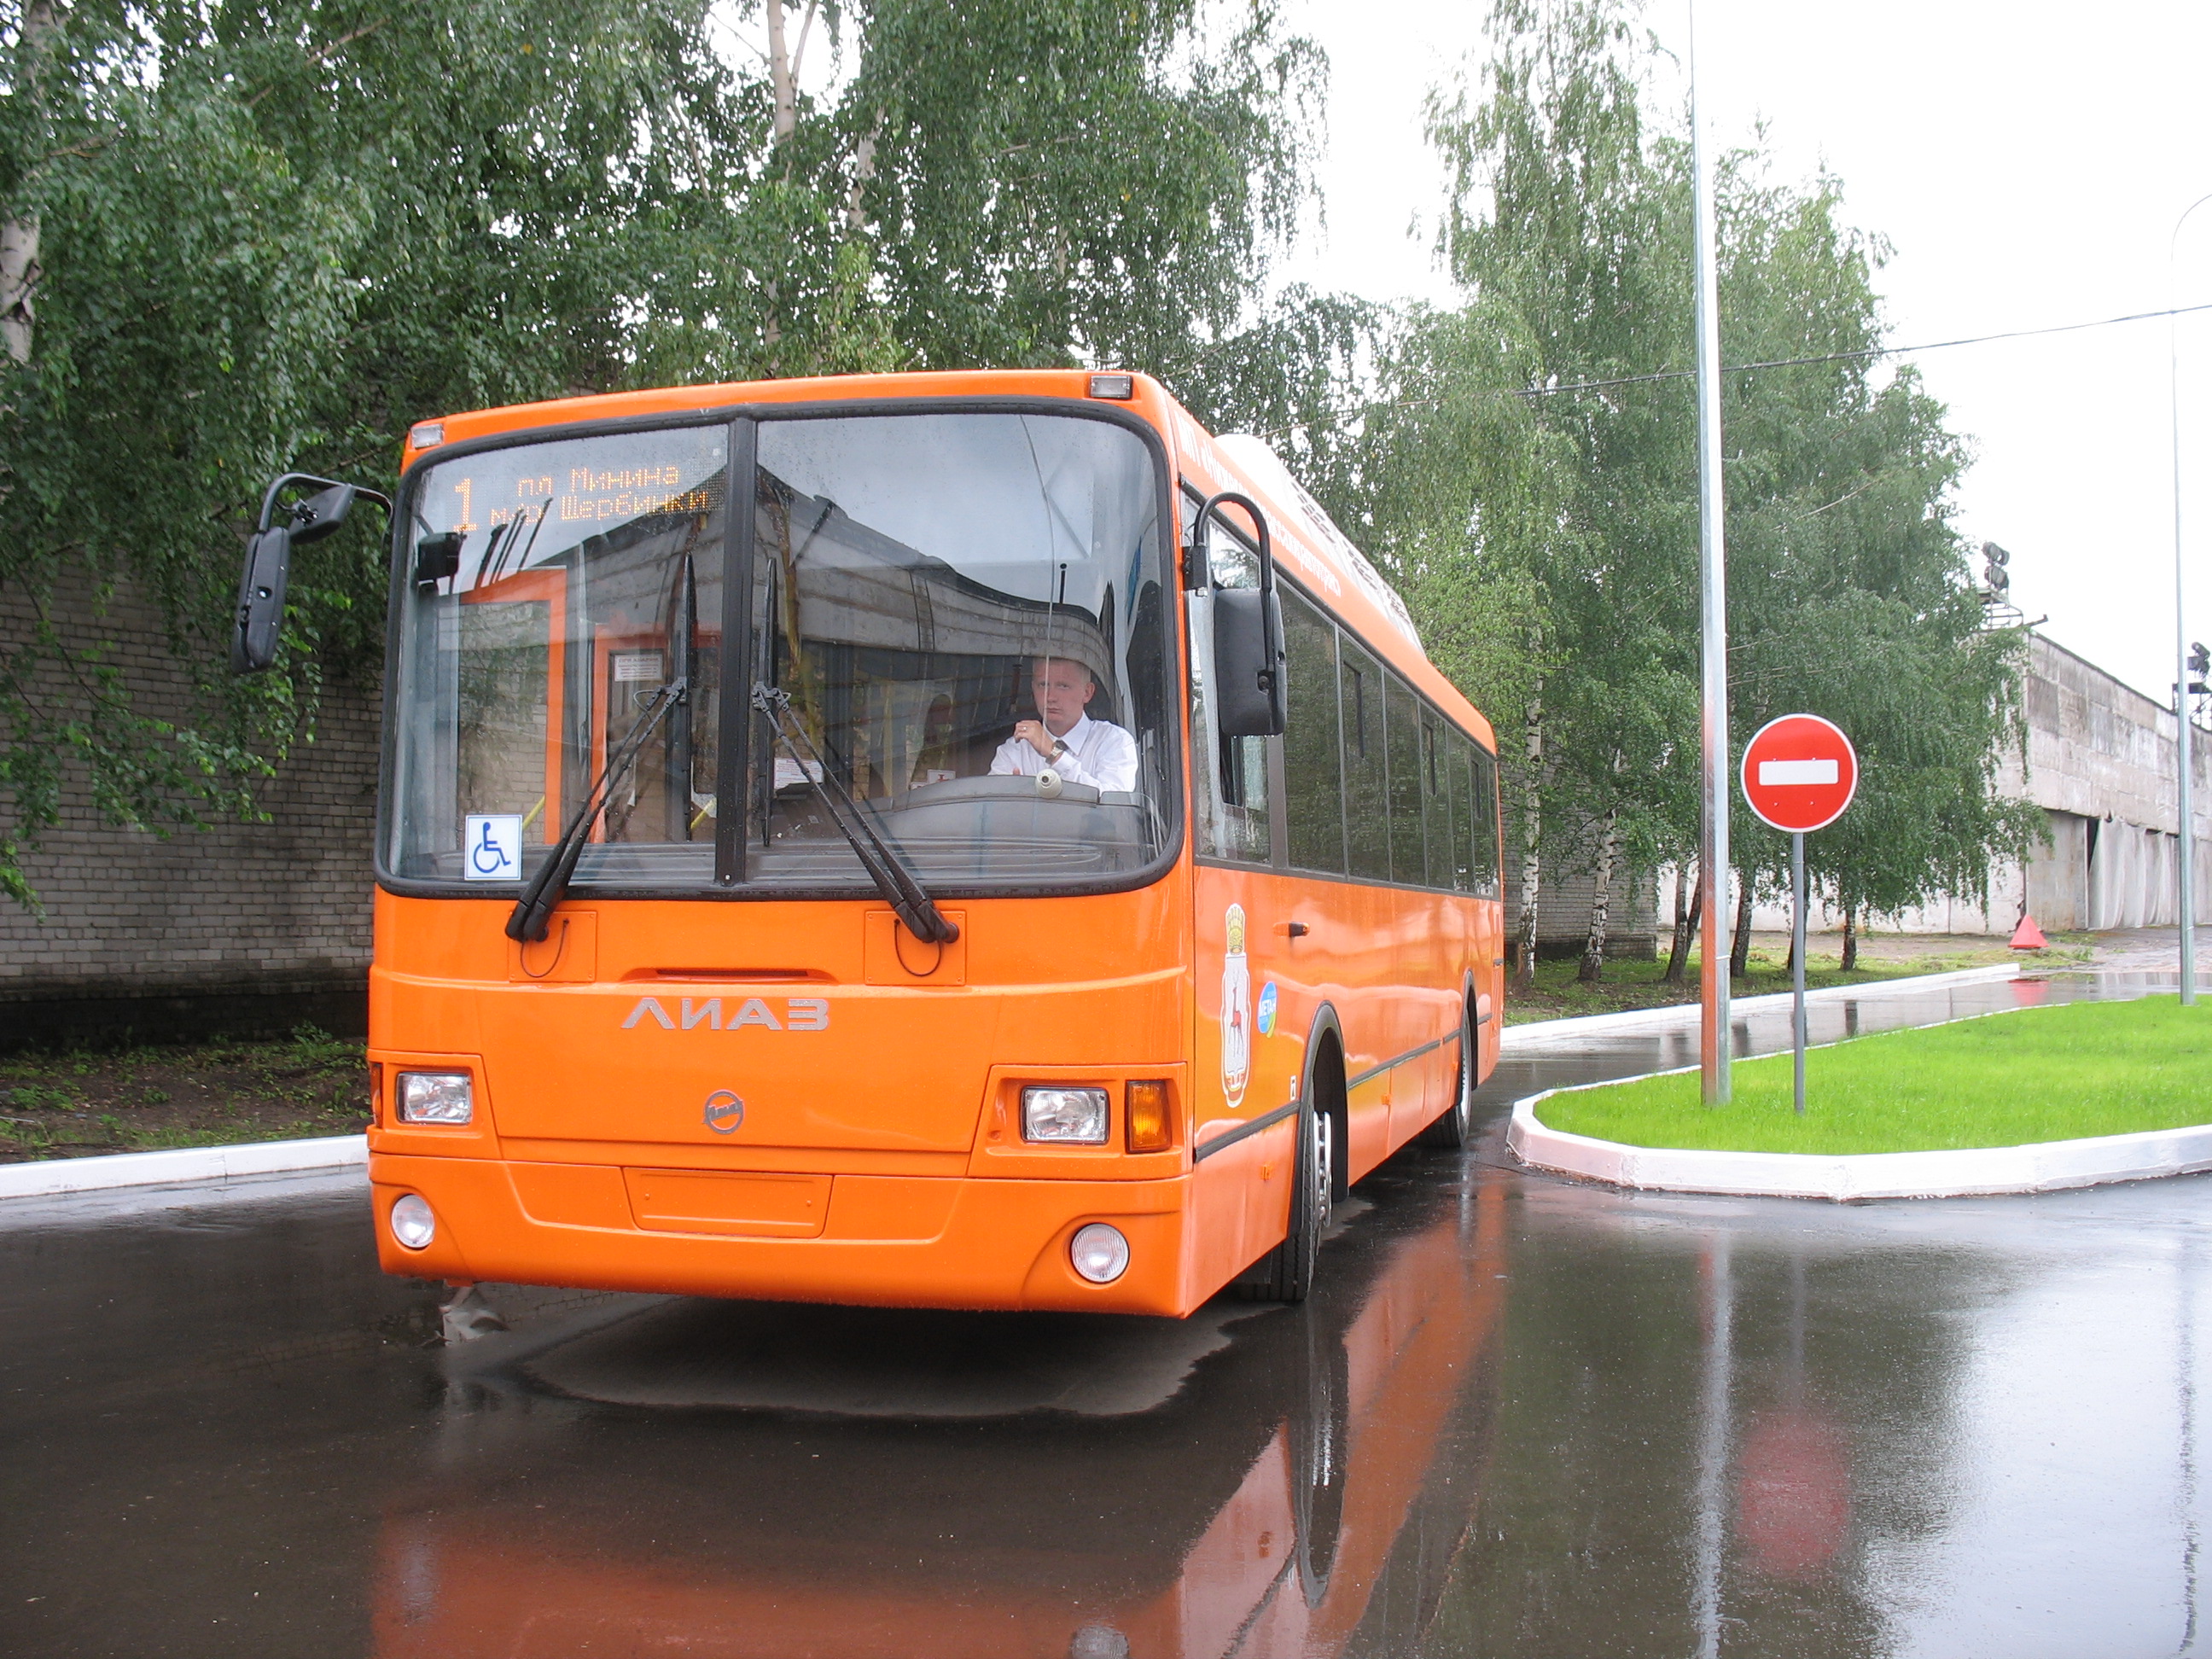 Стоимость проезда в общественном транспорте Нижнем Новгороде выросла до 35 рублей - фото 1